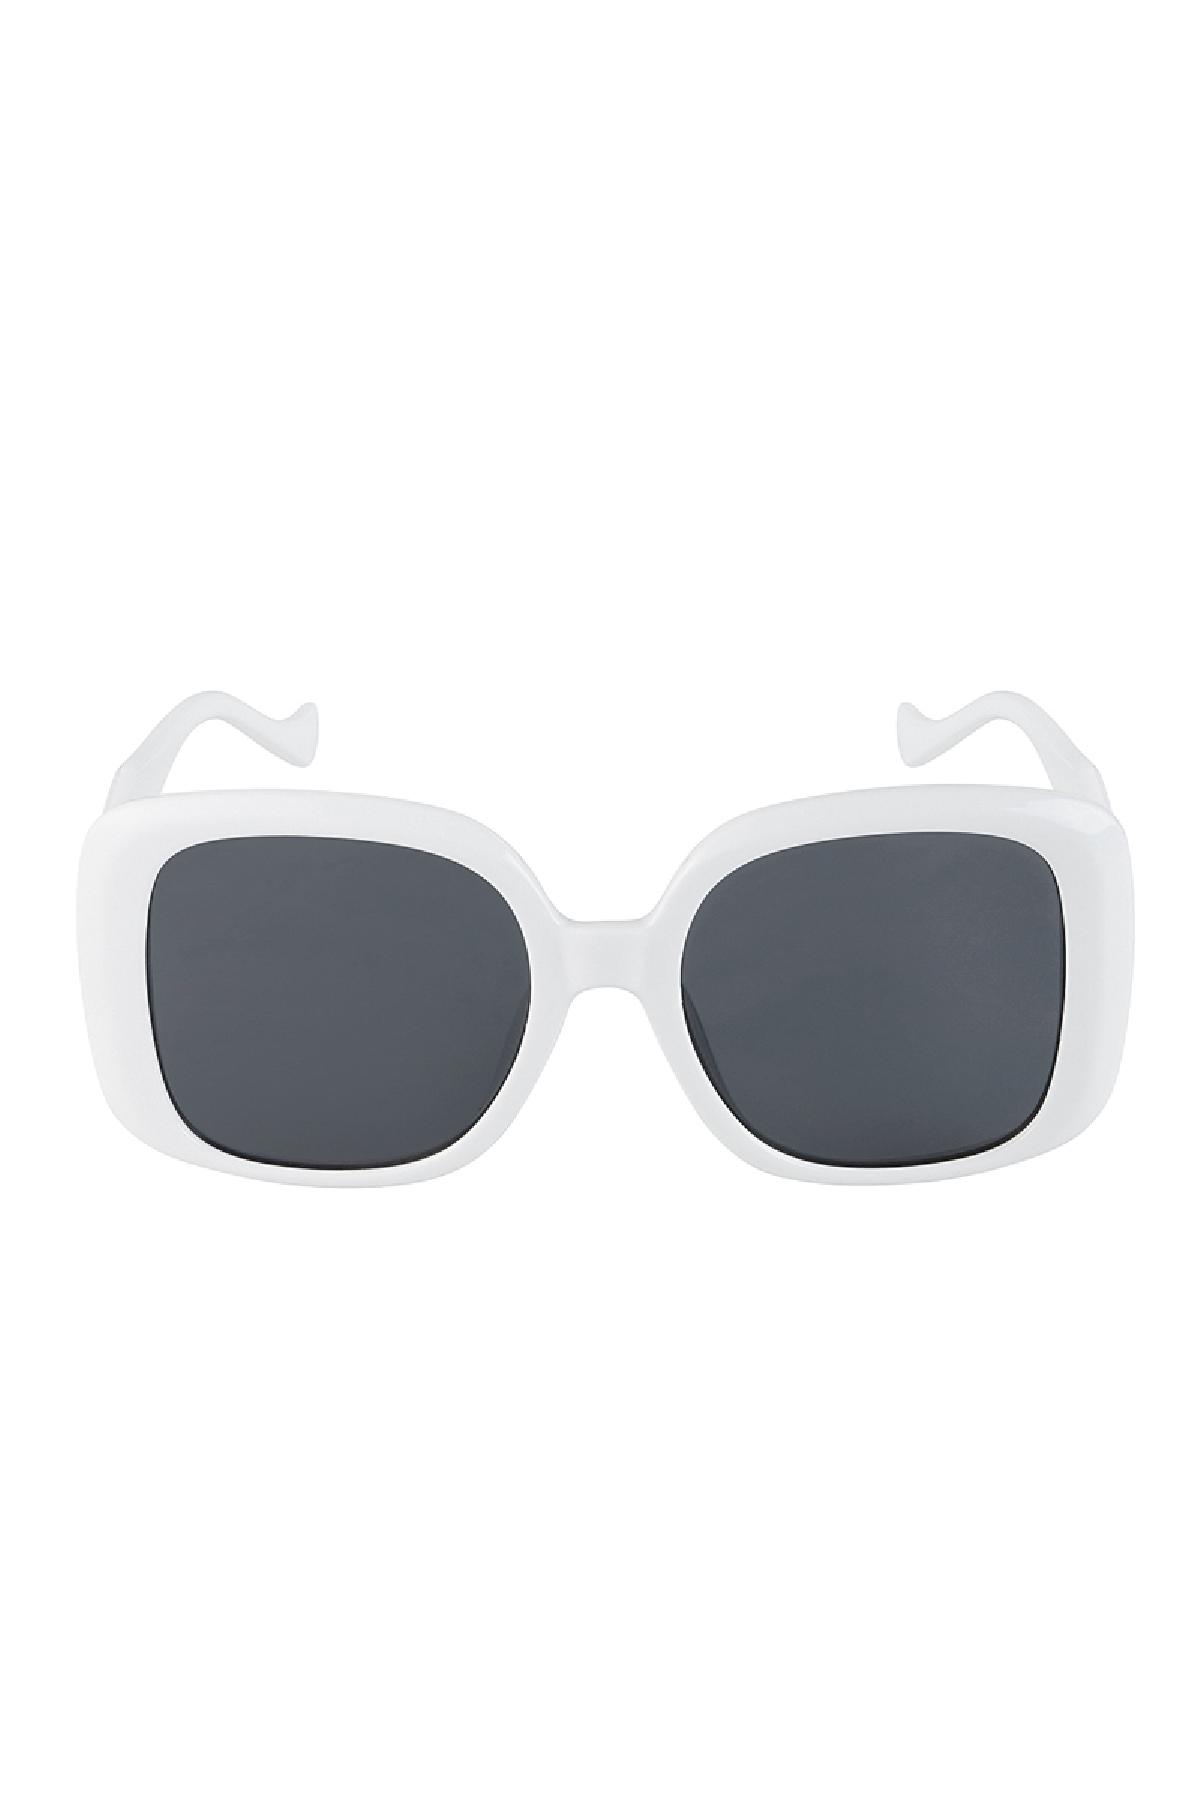 Temel güneş gözlüğü White PC One size Resim3